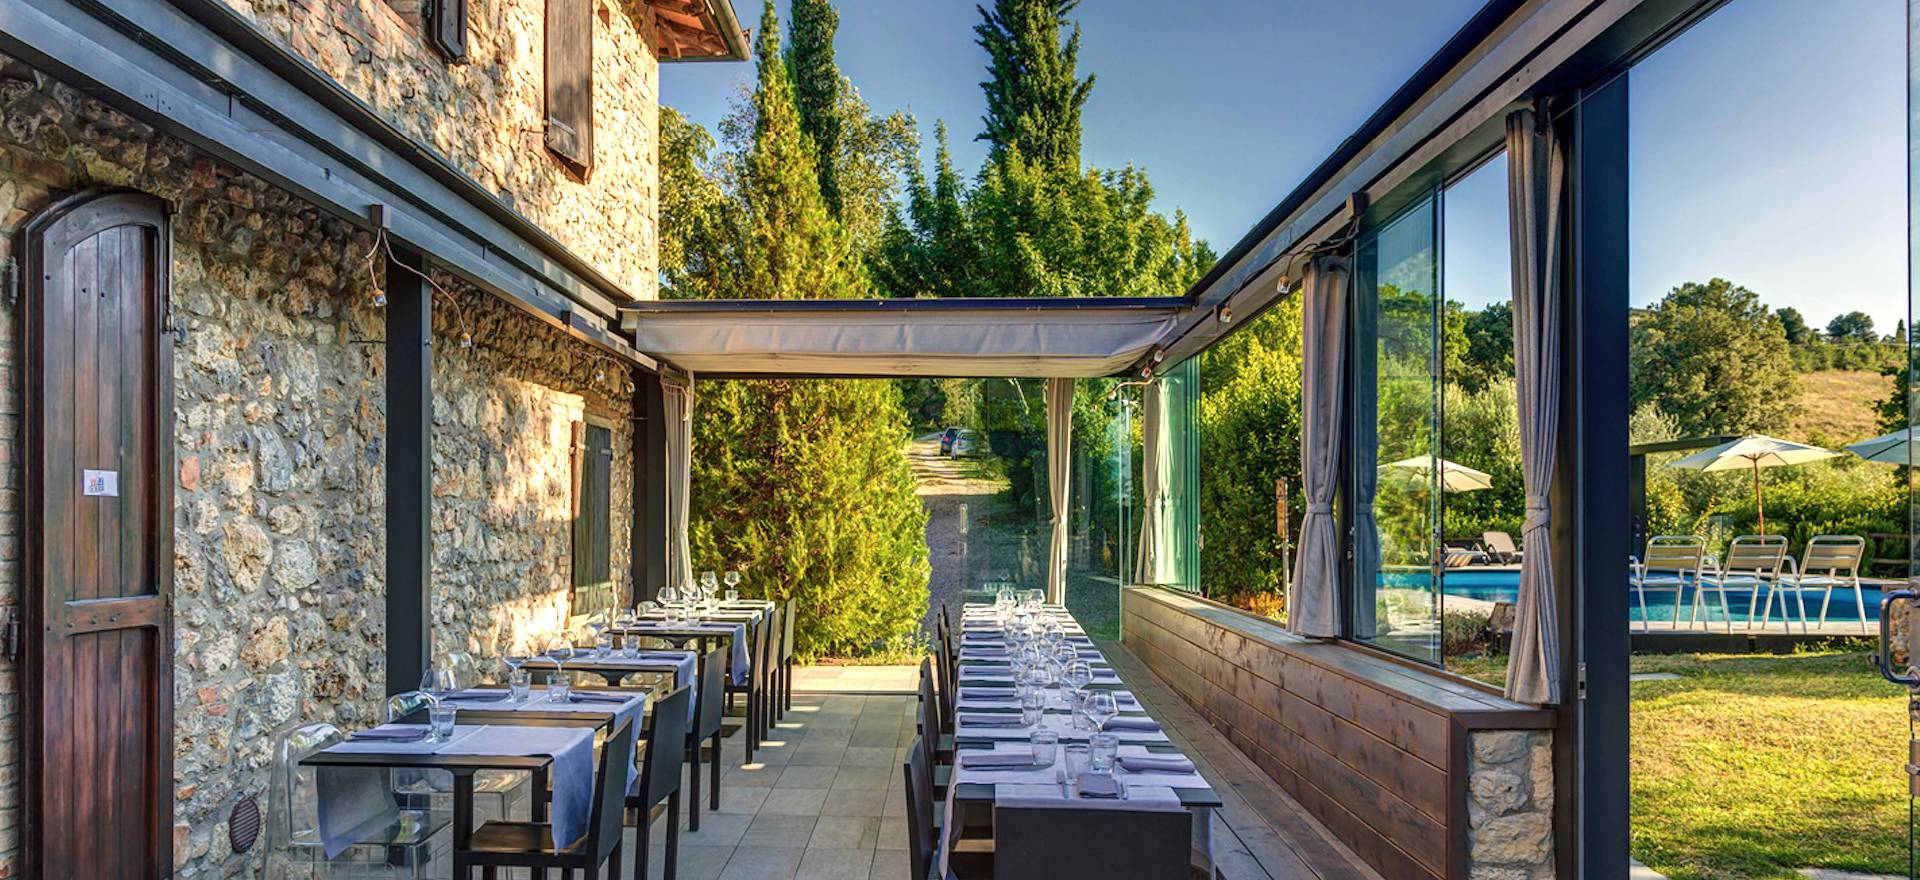 Agriturismo Tuscany Agriturismo with restaurant near San Gimignano, Tuscany